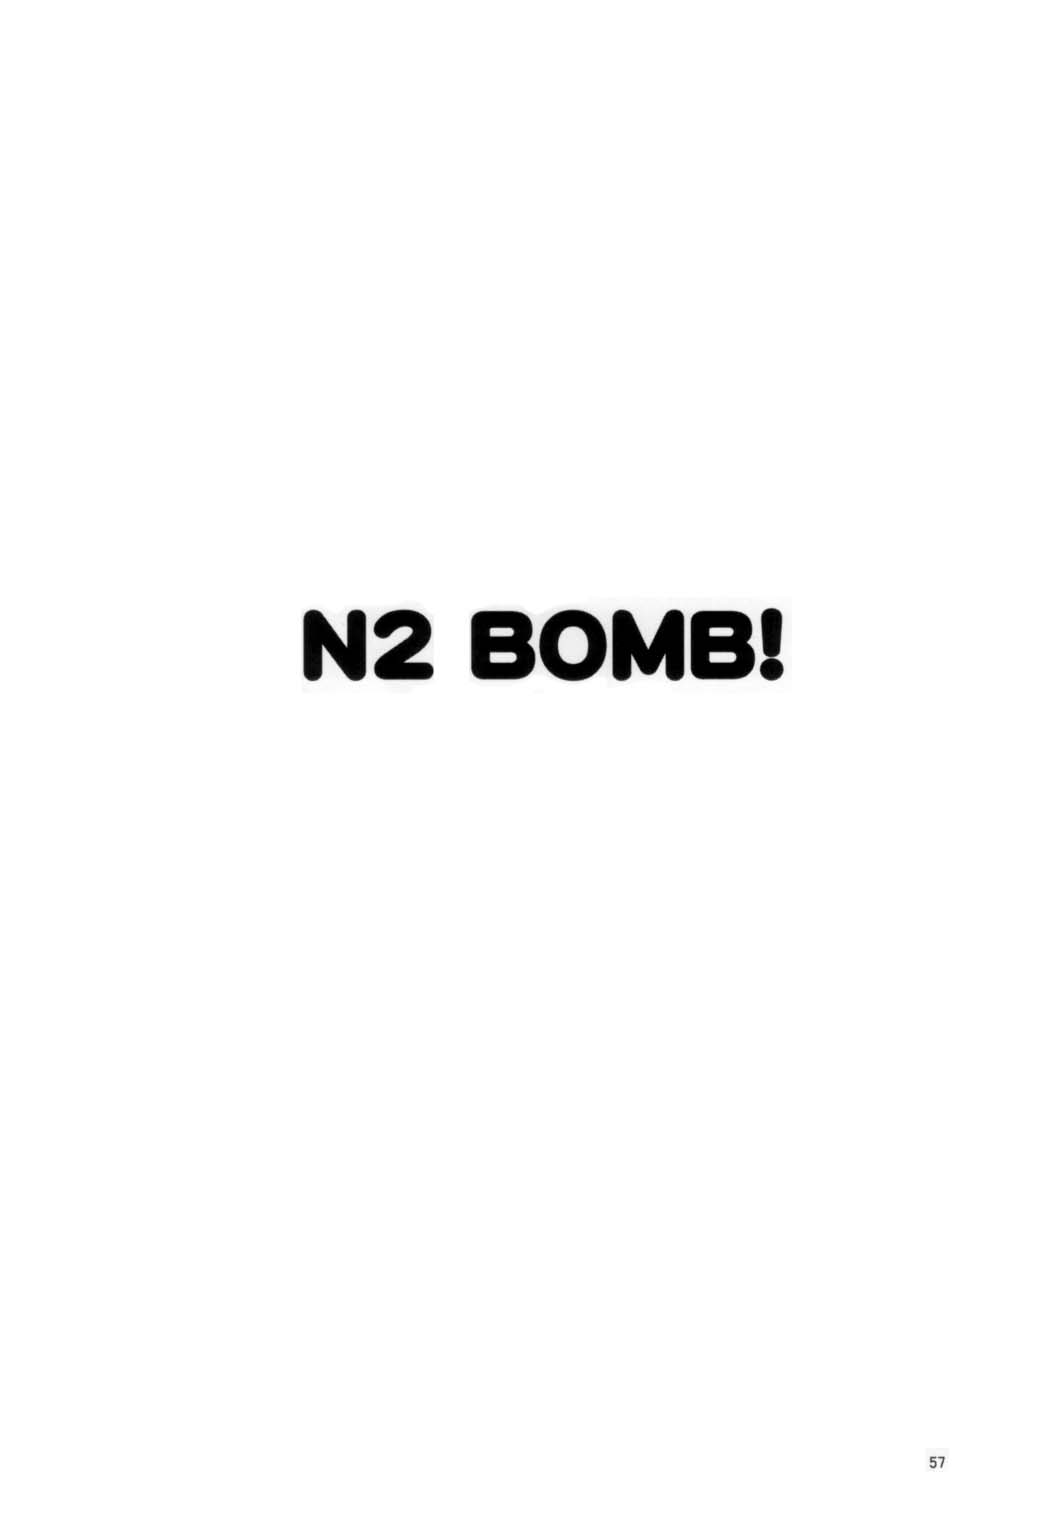 [Mogudan] N2 Bomb 